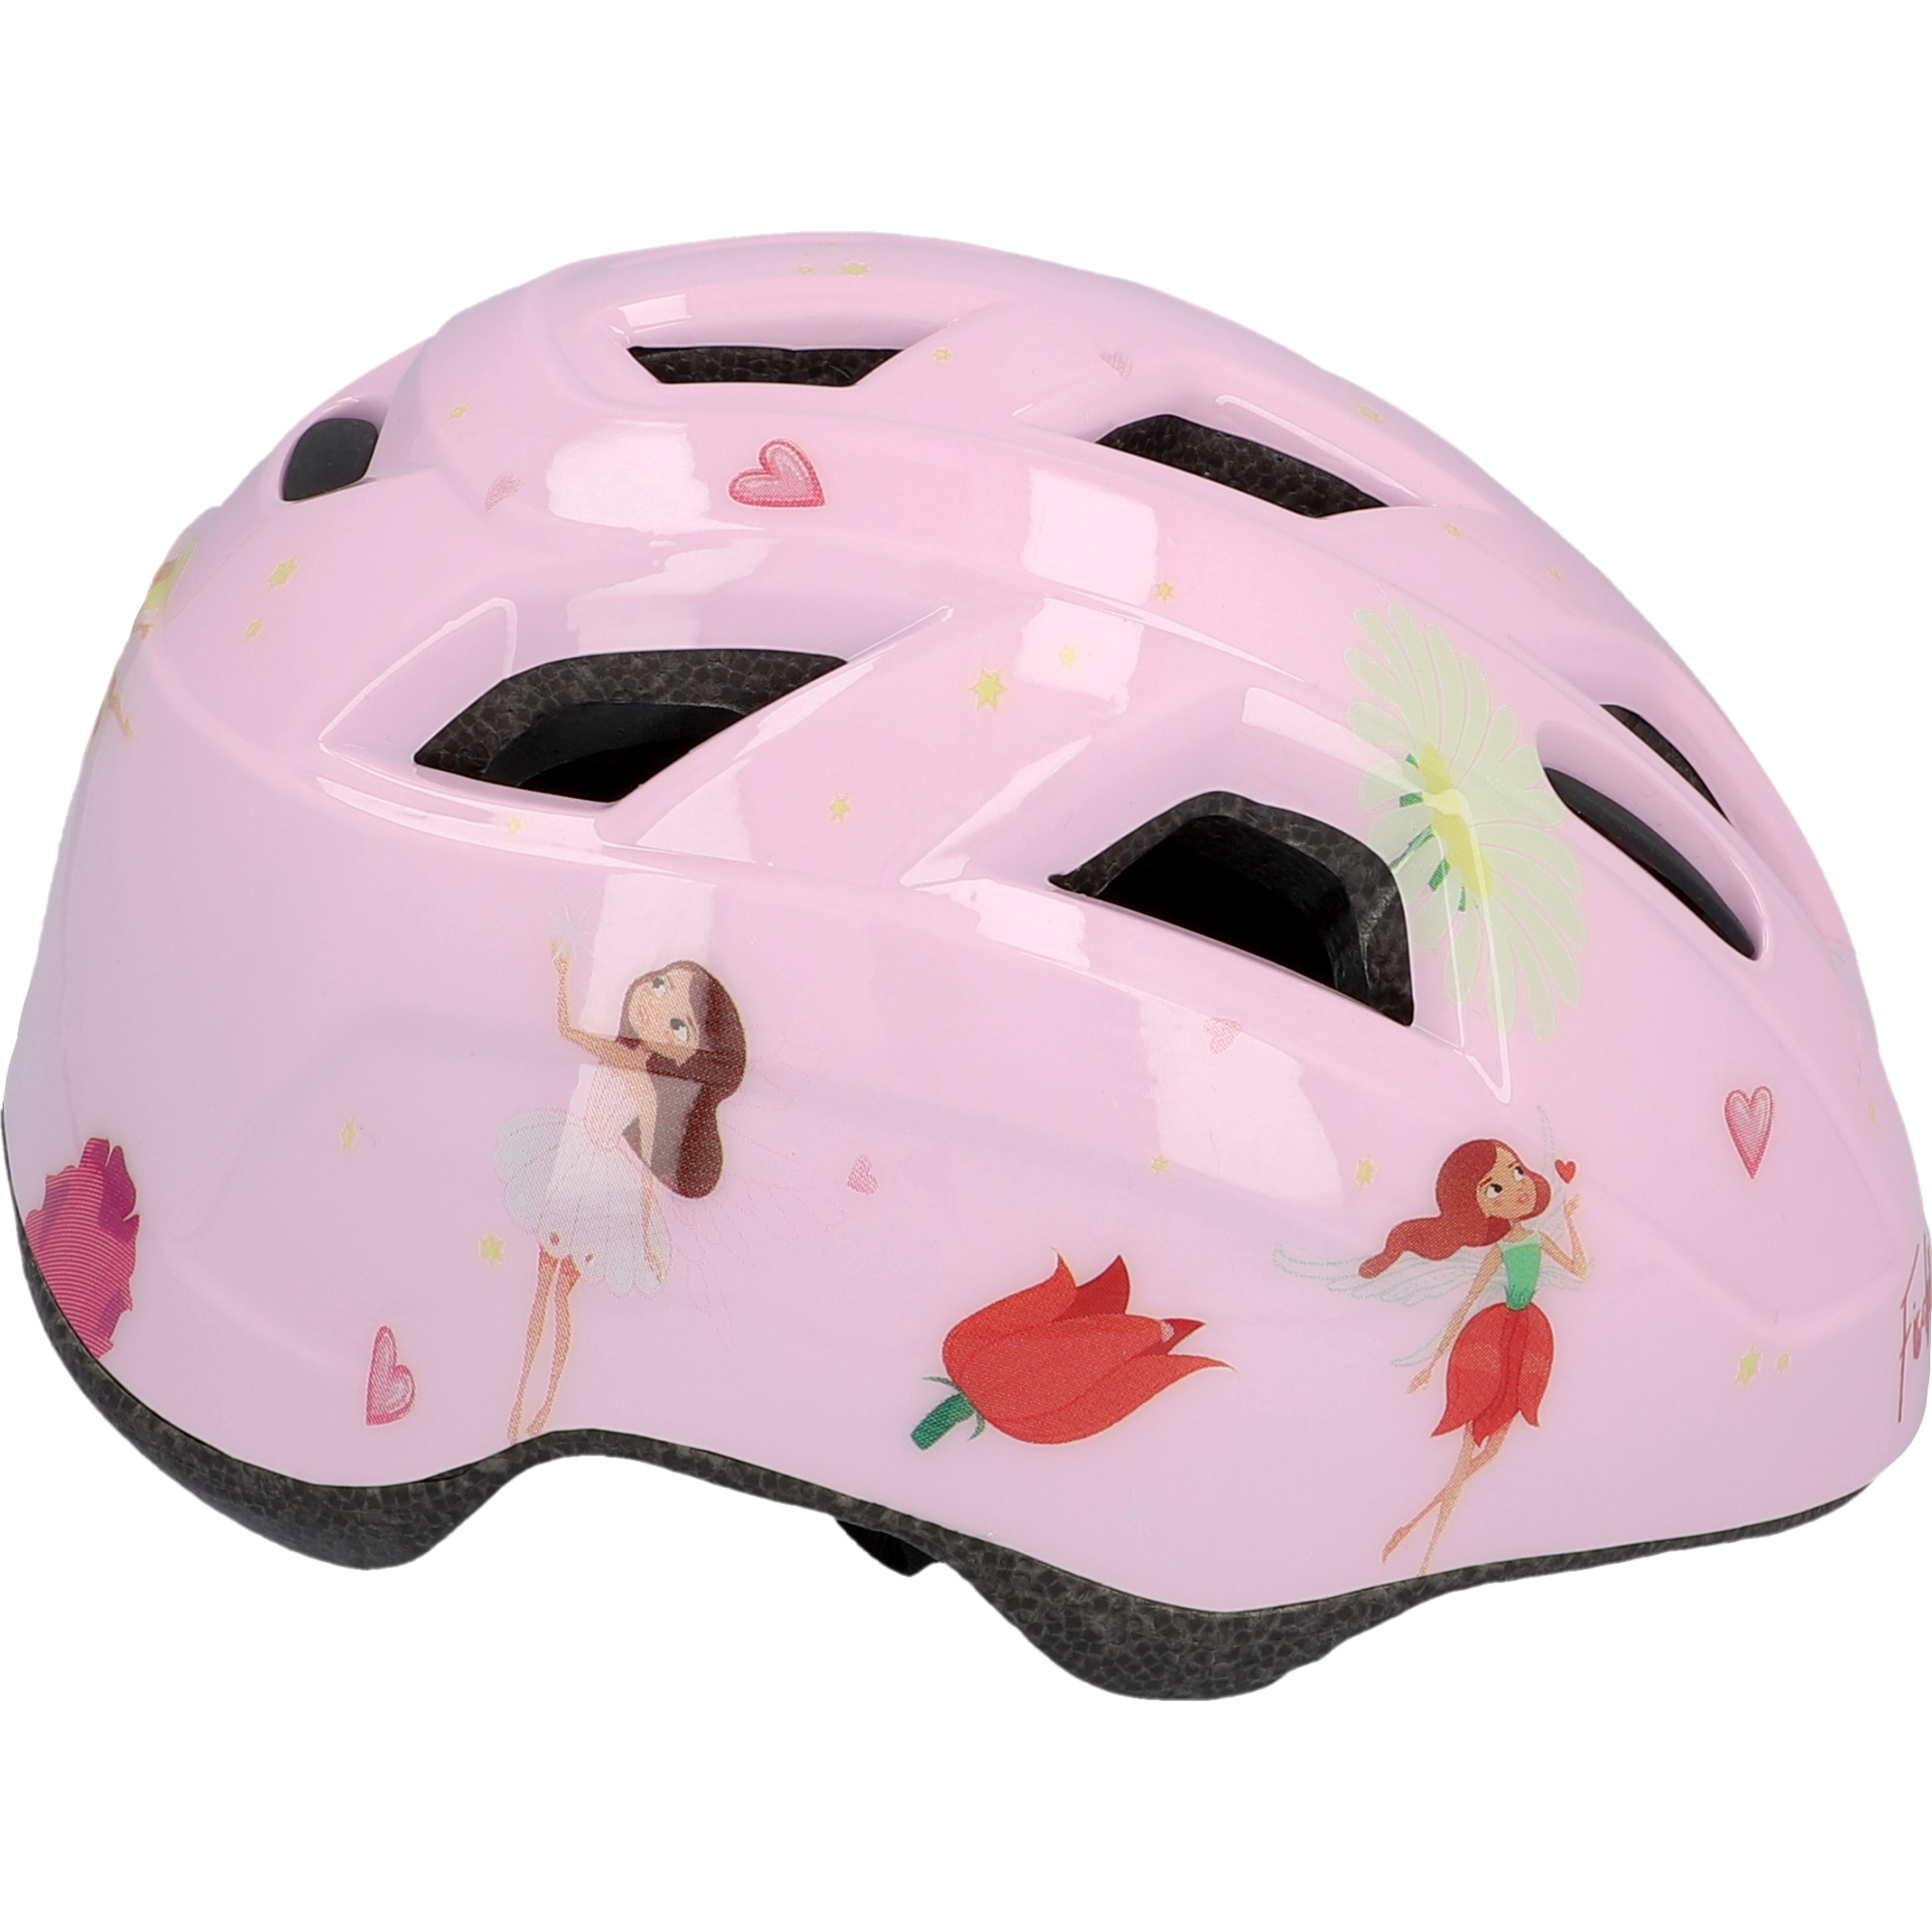 Fahrradhelm 'Kinder Plus Princess' rosa XS/S + product picture